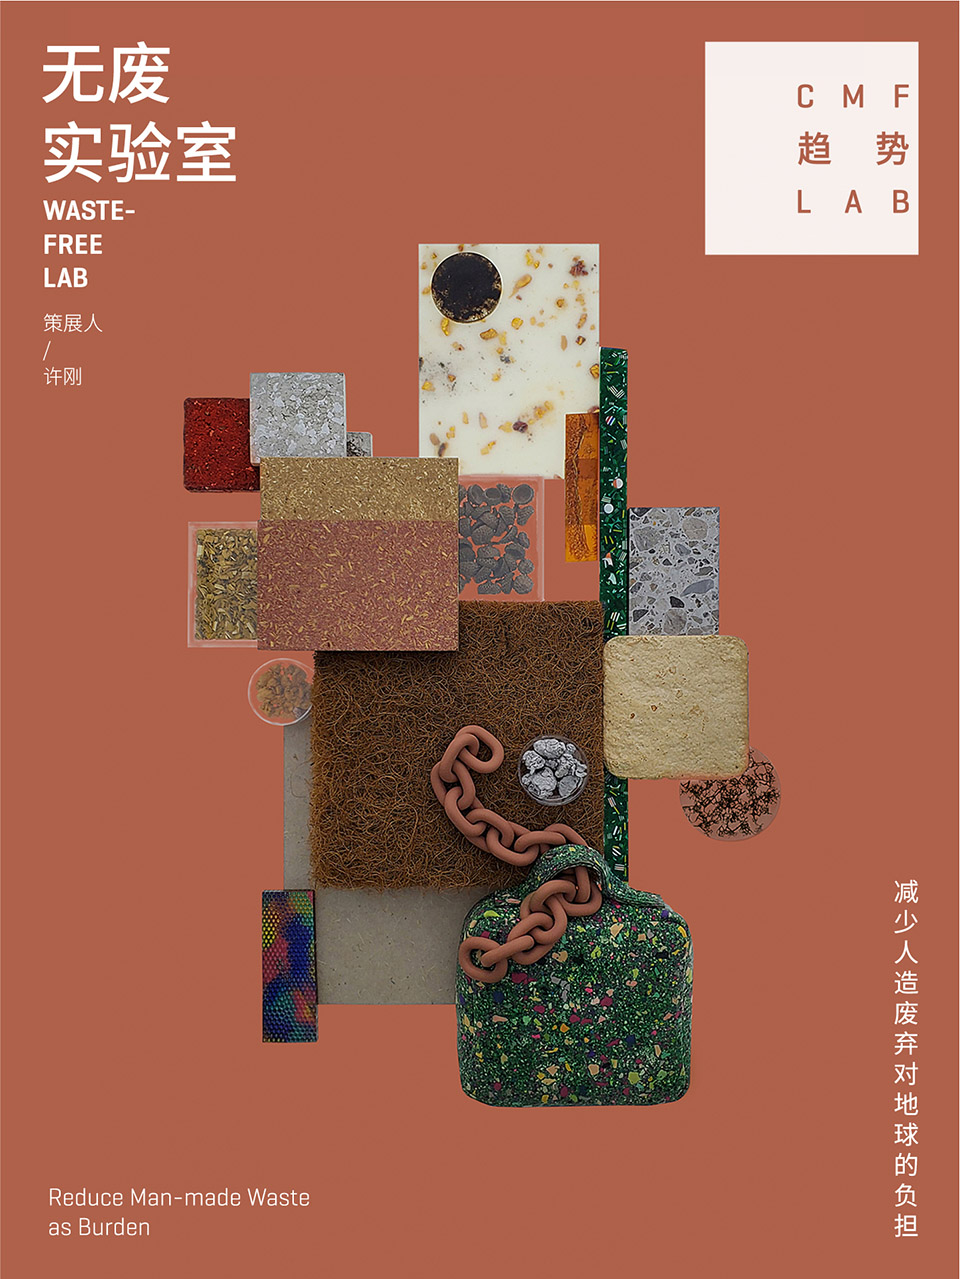 中国家博会“CMF趋势LAB” 四大主题实验室全新发布/“虚拟重构实验室”、“融手艺材料实验室”、“精致懒实验室”、“无废实验室”
-121